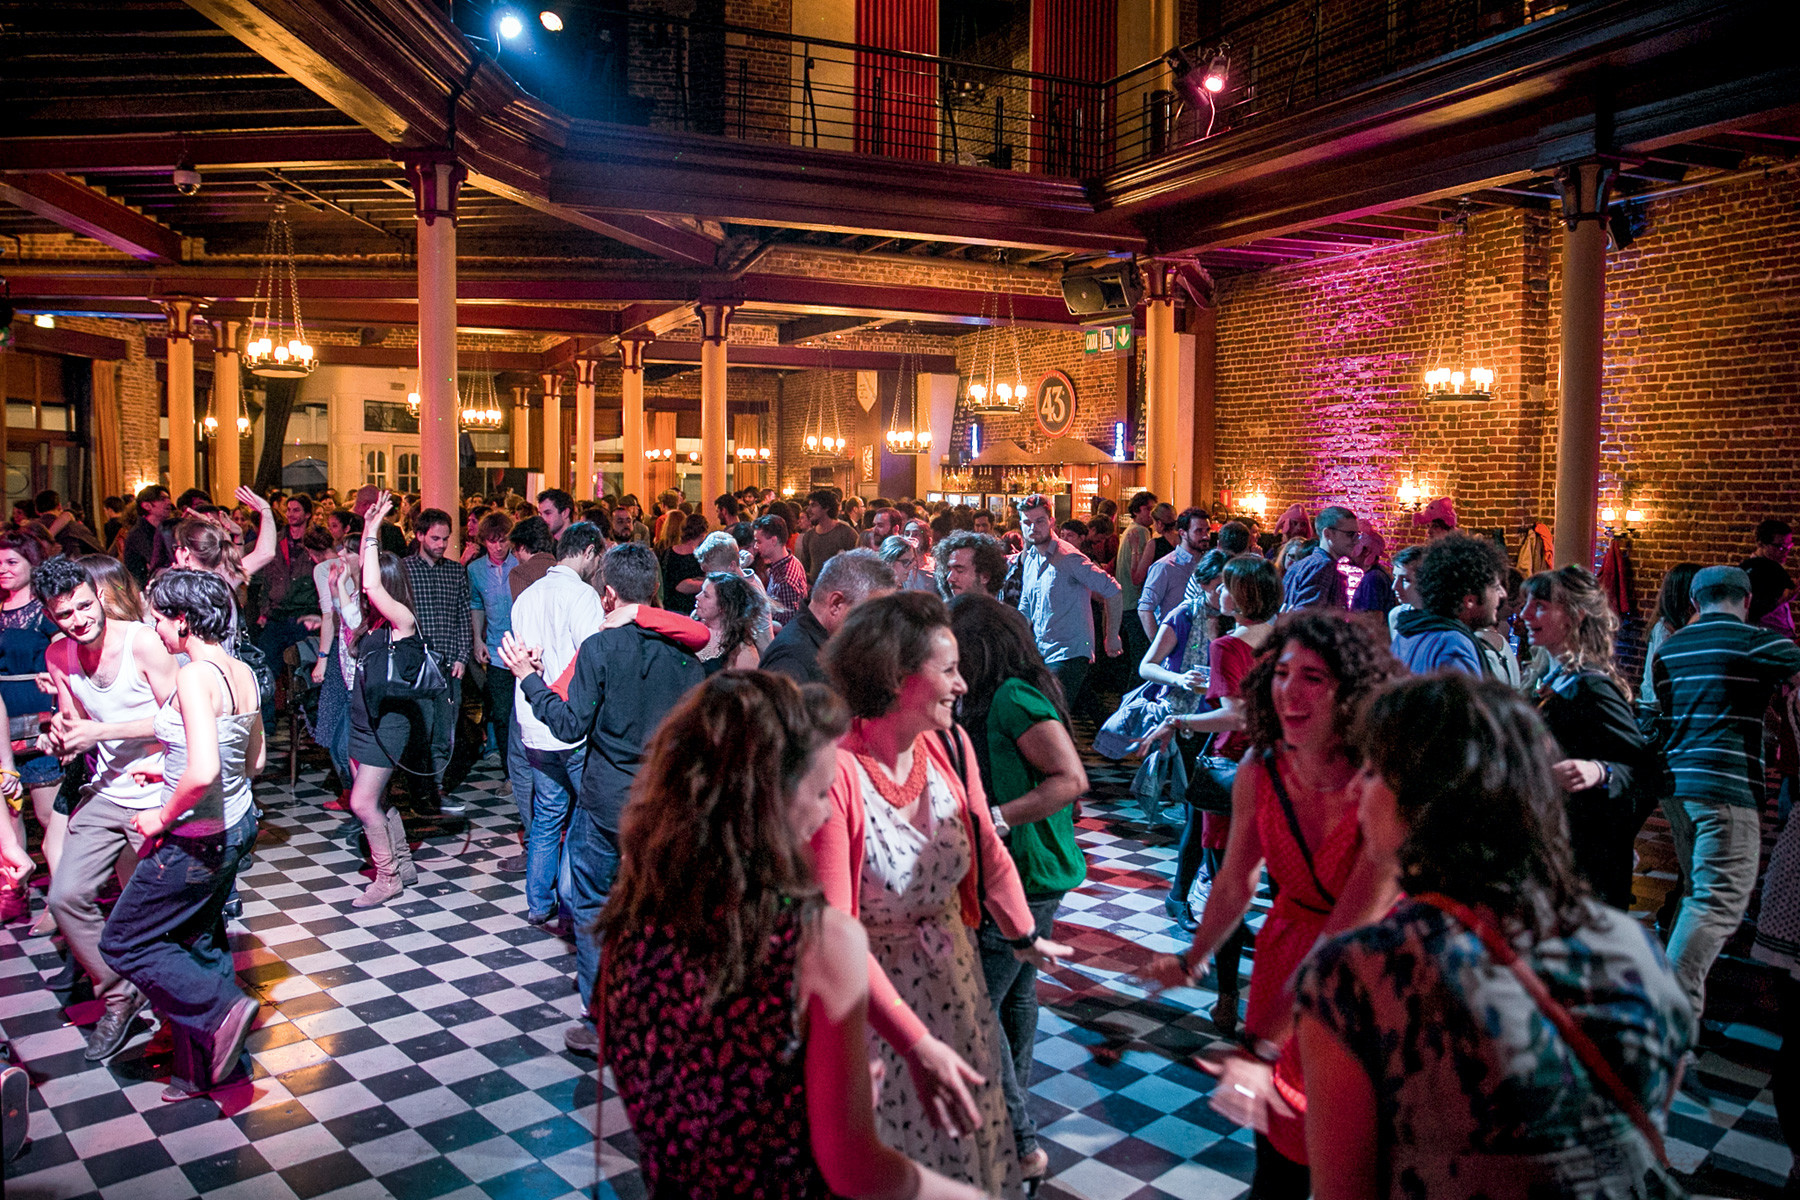 Muziektrend in Brussel: de swing. In de club La Tentation gaan de voetjes van de vloer. Foto: Snappp